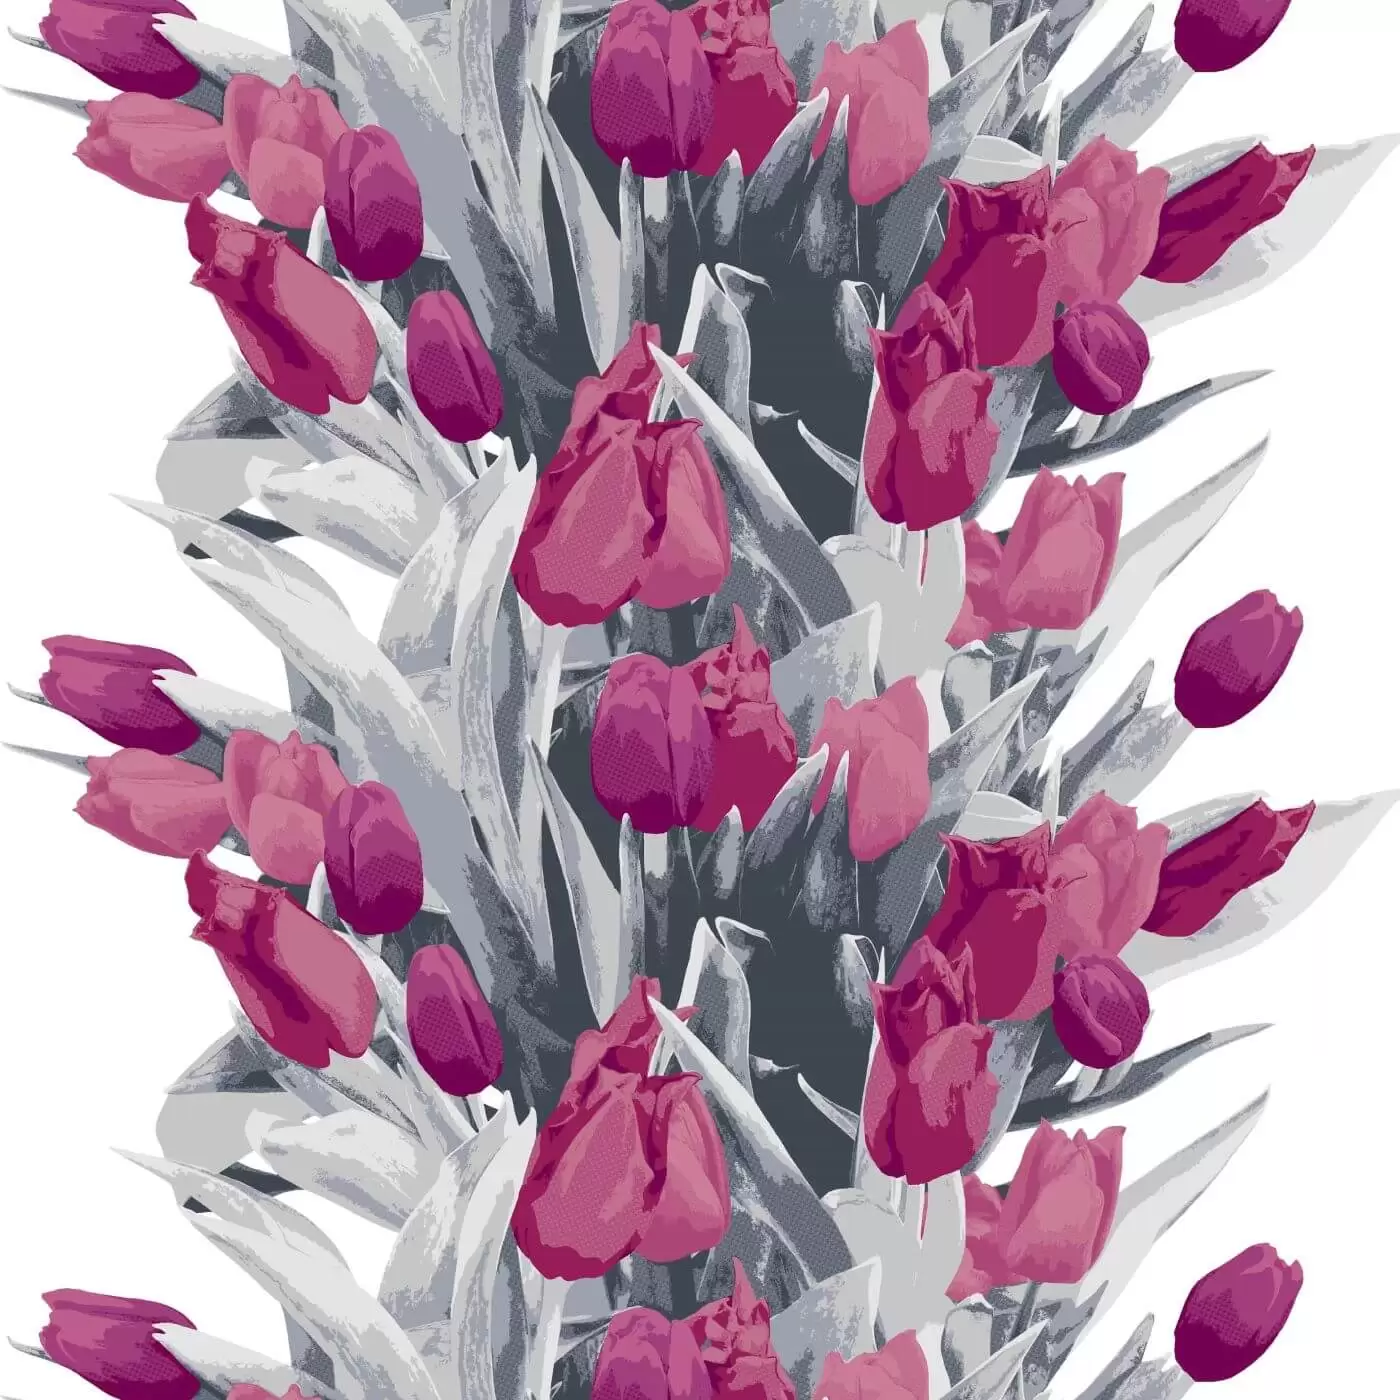 Zasłony w tulipany Pauliina. Fragment wzoru w fioletowe kwiaty tulipanów i szare liście na białym tle. Skandynawskie wzornictwo